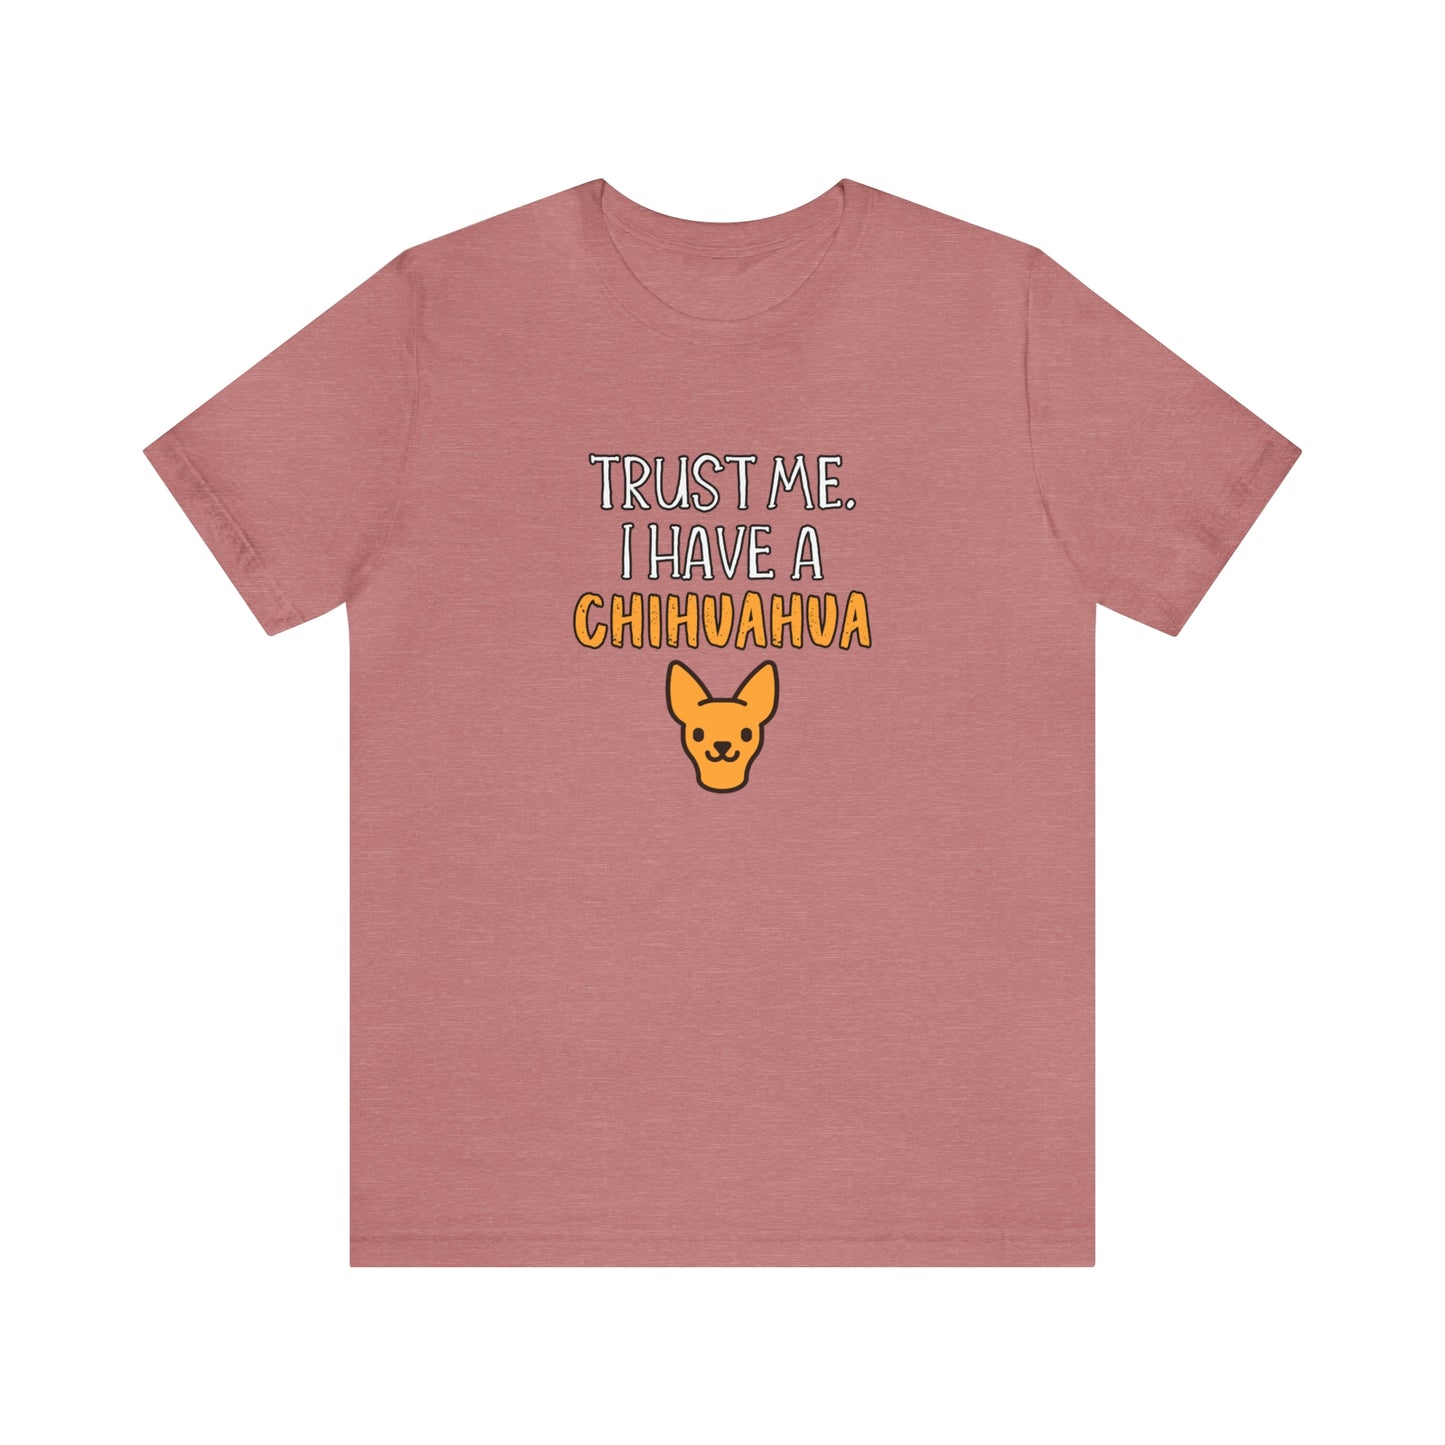 chihuahua t shirt pink